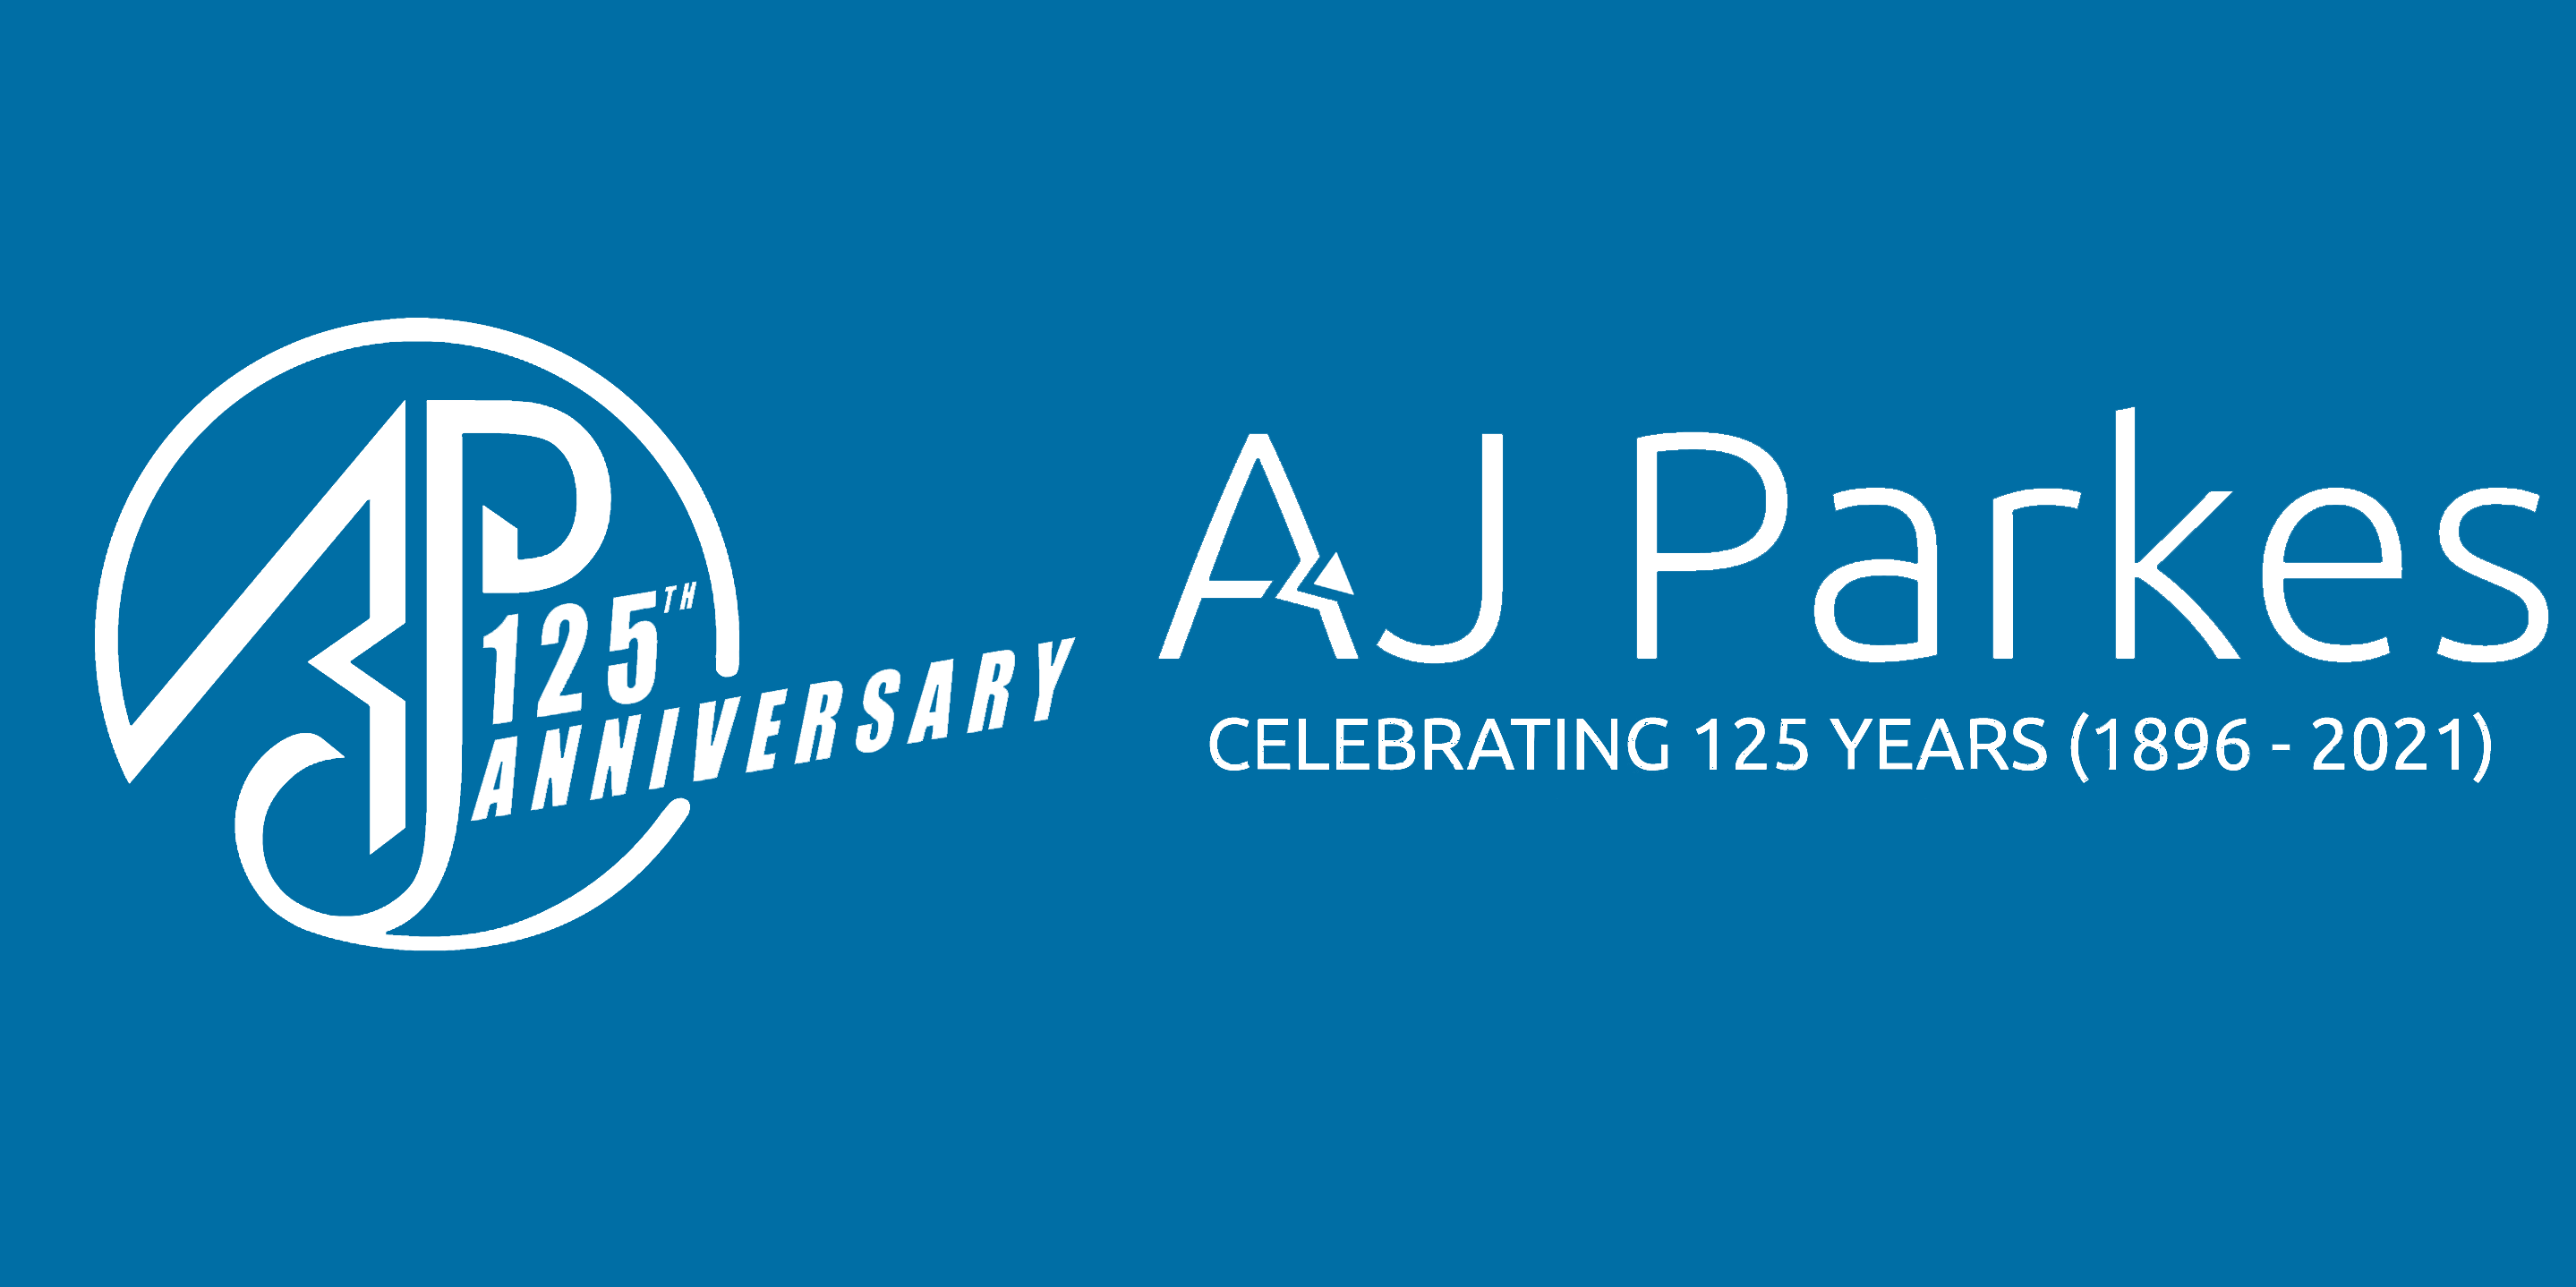 AJ Parkes & Co Pty Ltd